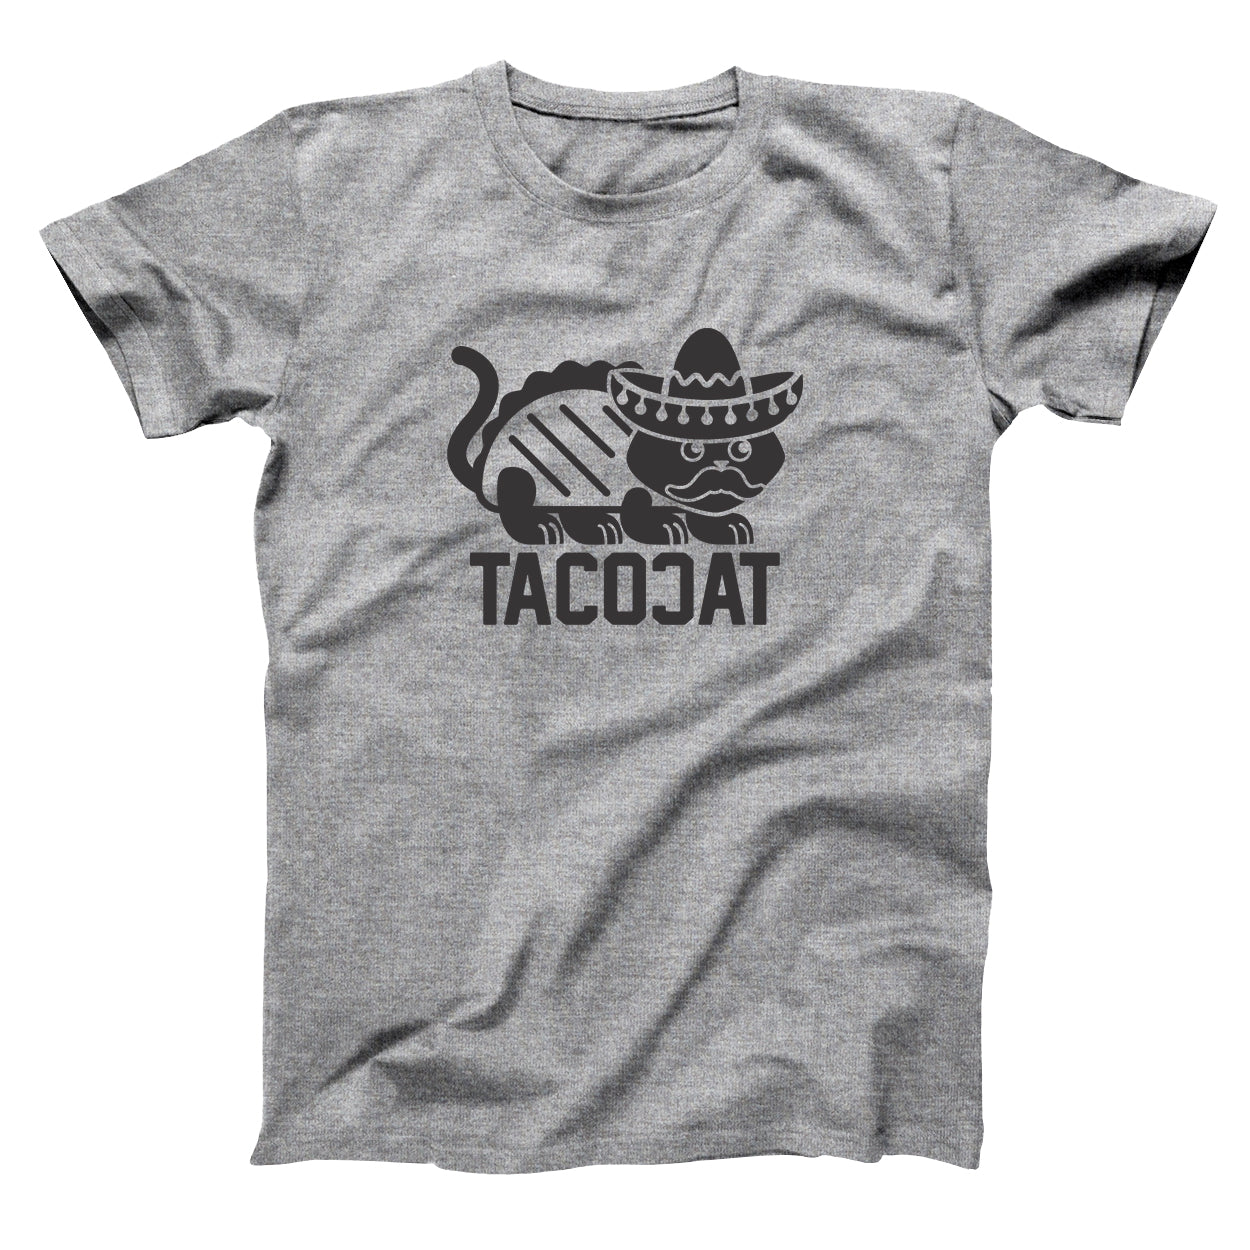 Tacocat Taco Cat Tshirt - Donkey Tees